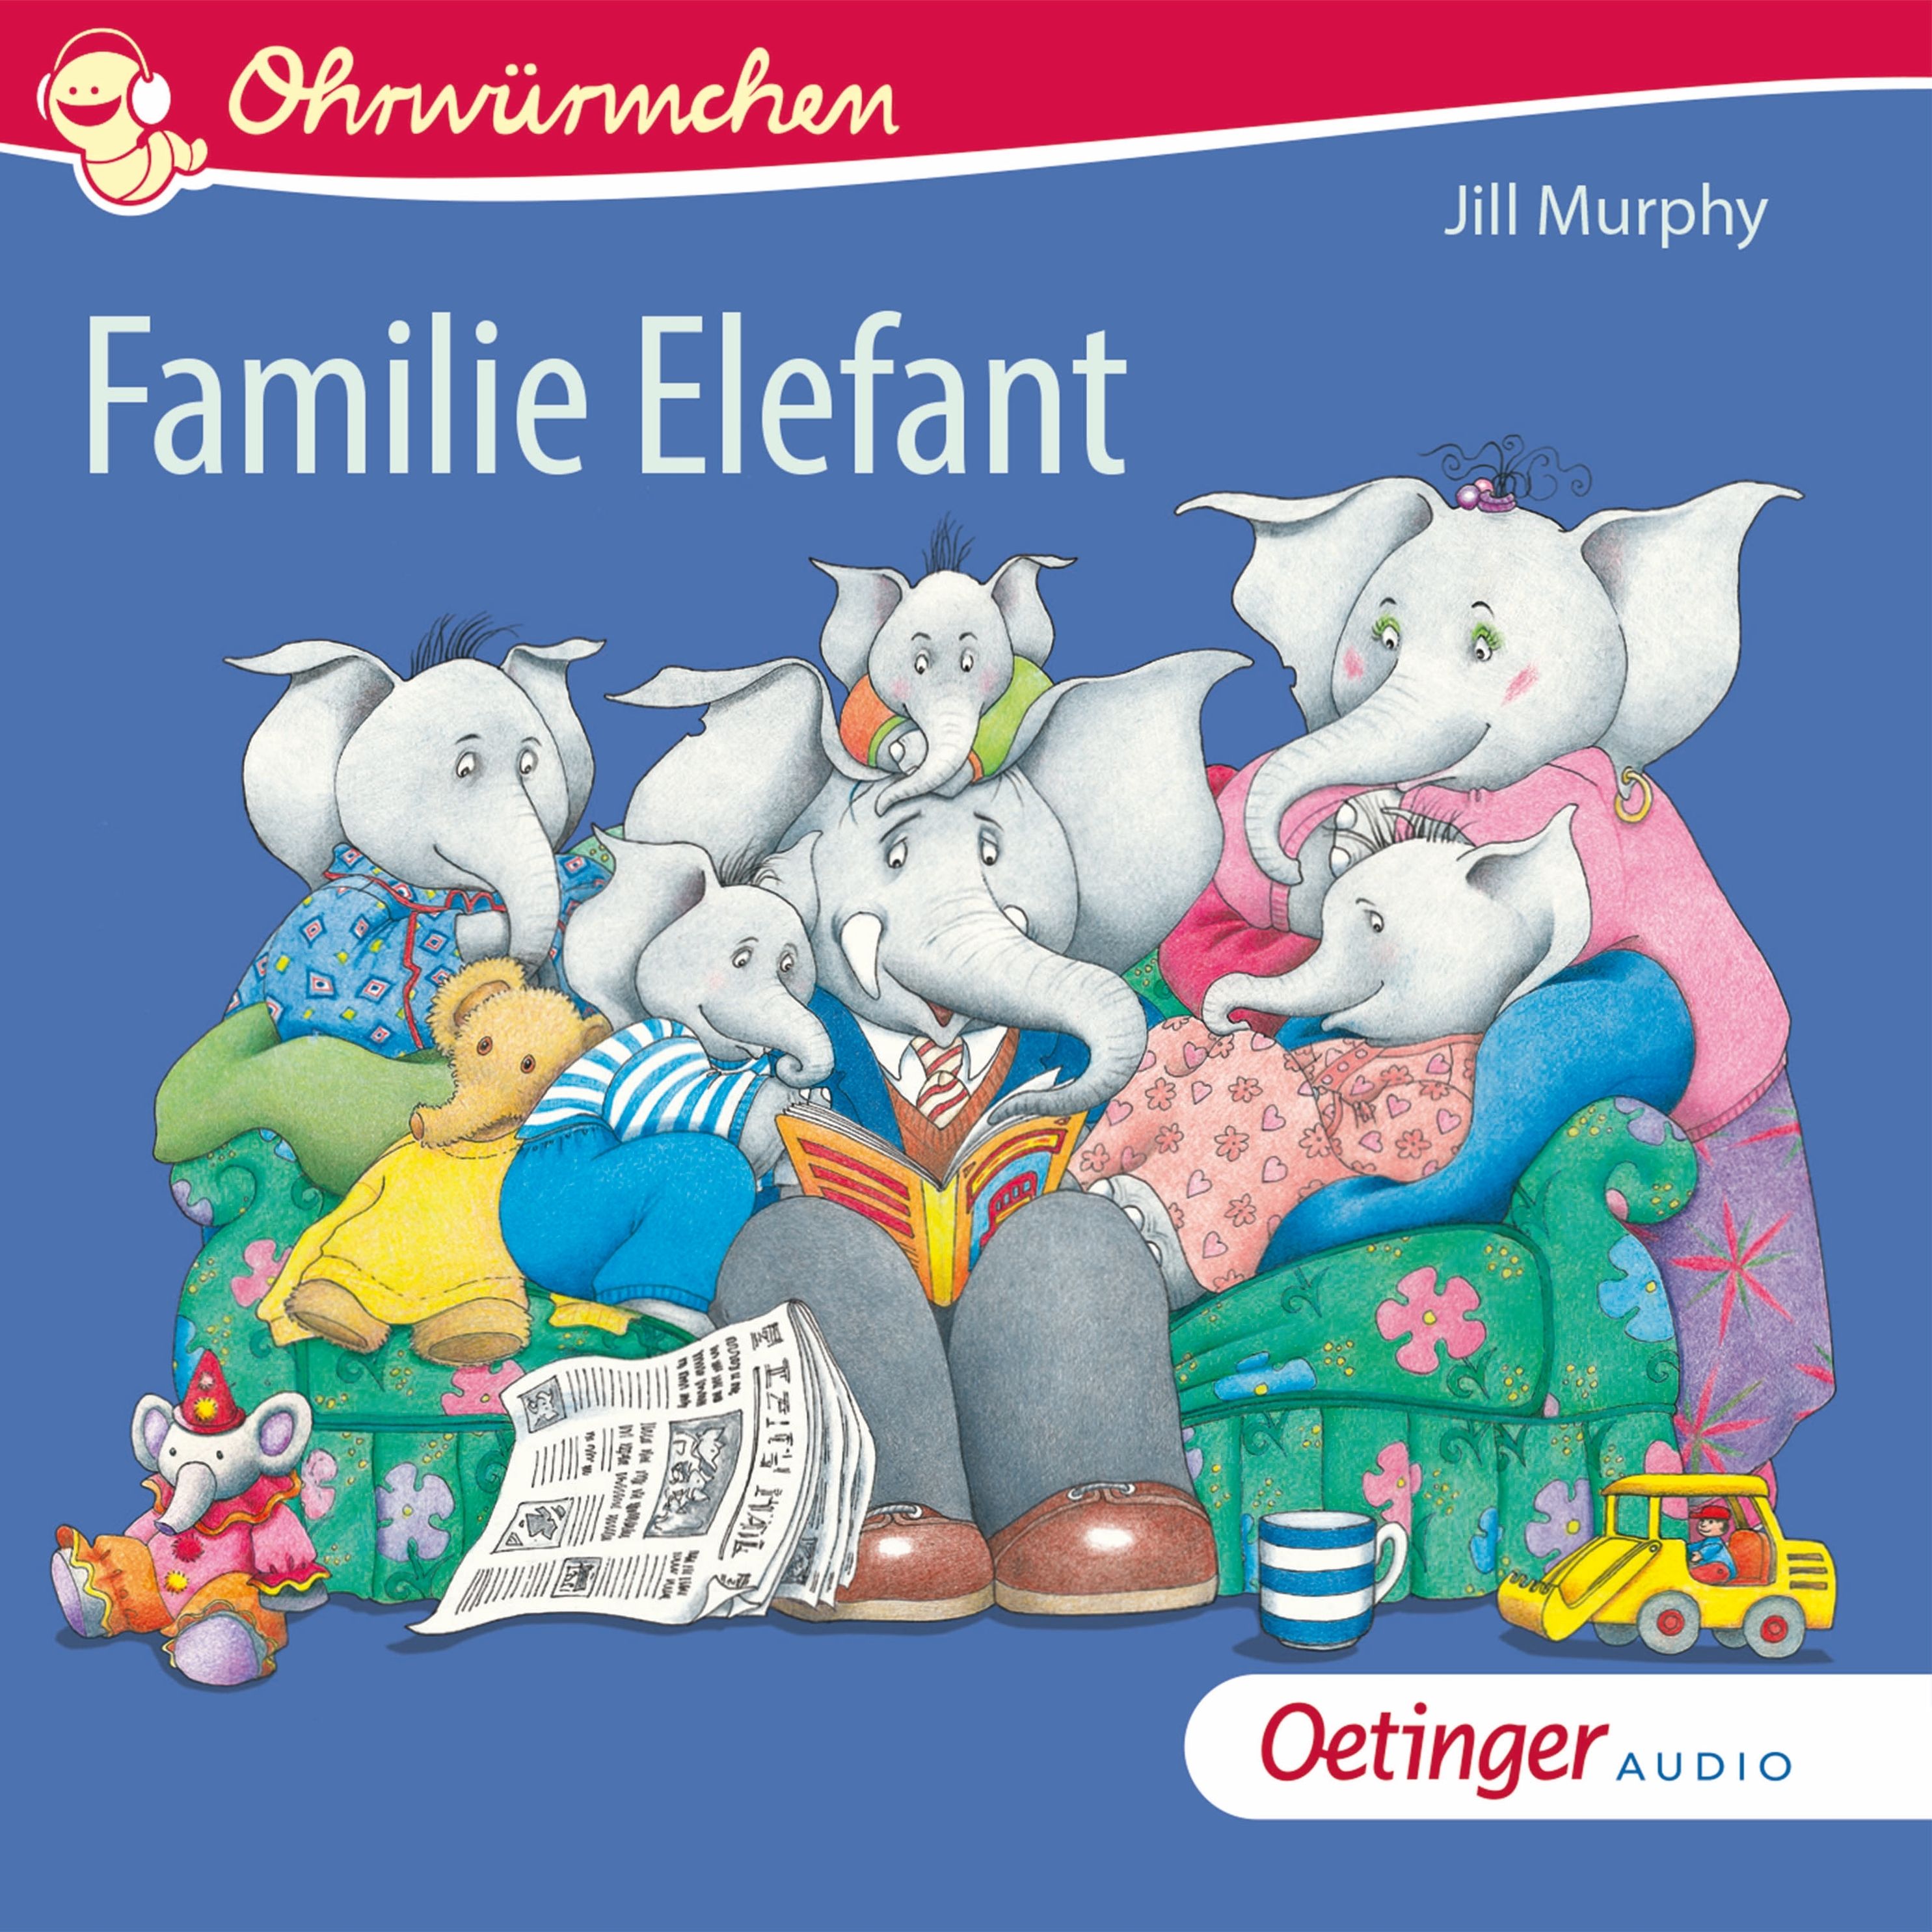 Ohrwürmchen - Familie Elefant Hörbuch downloaden bei Weltbild.de